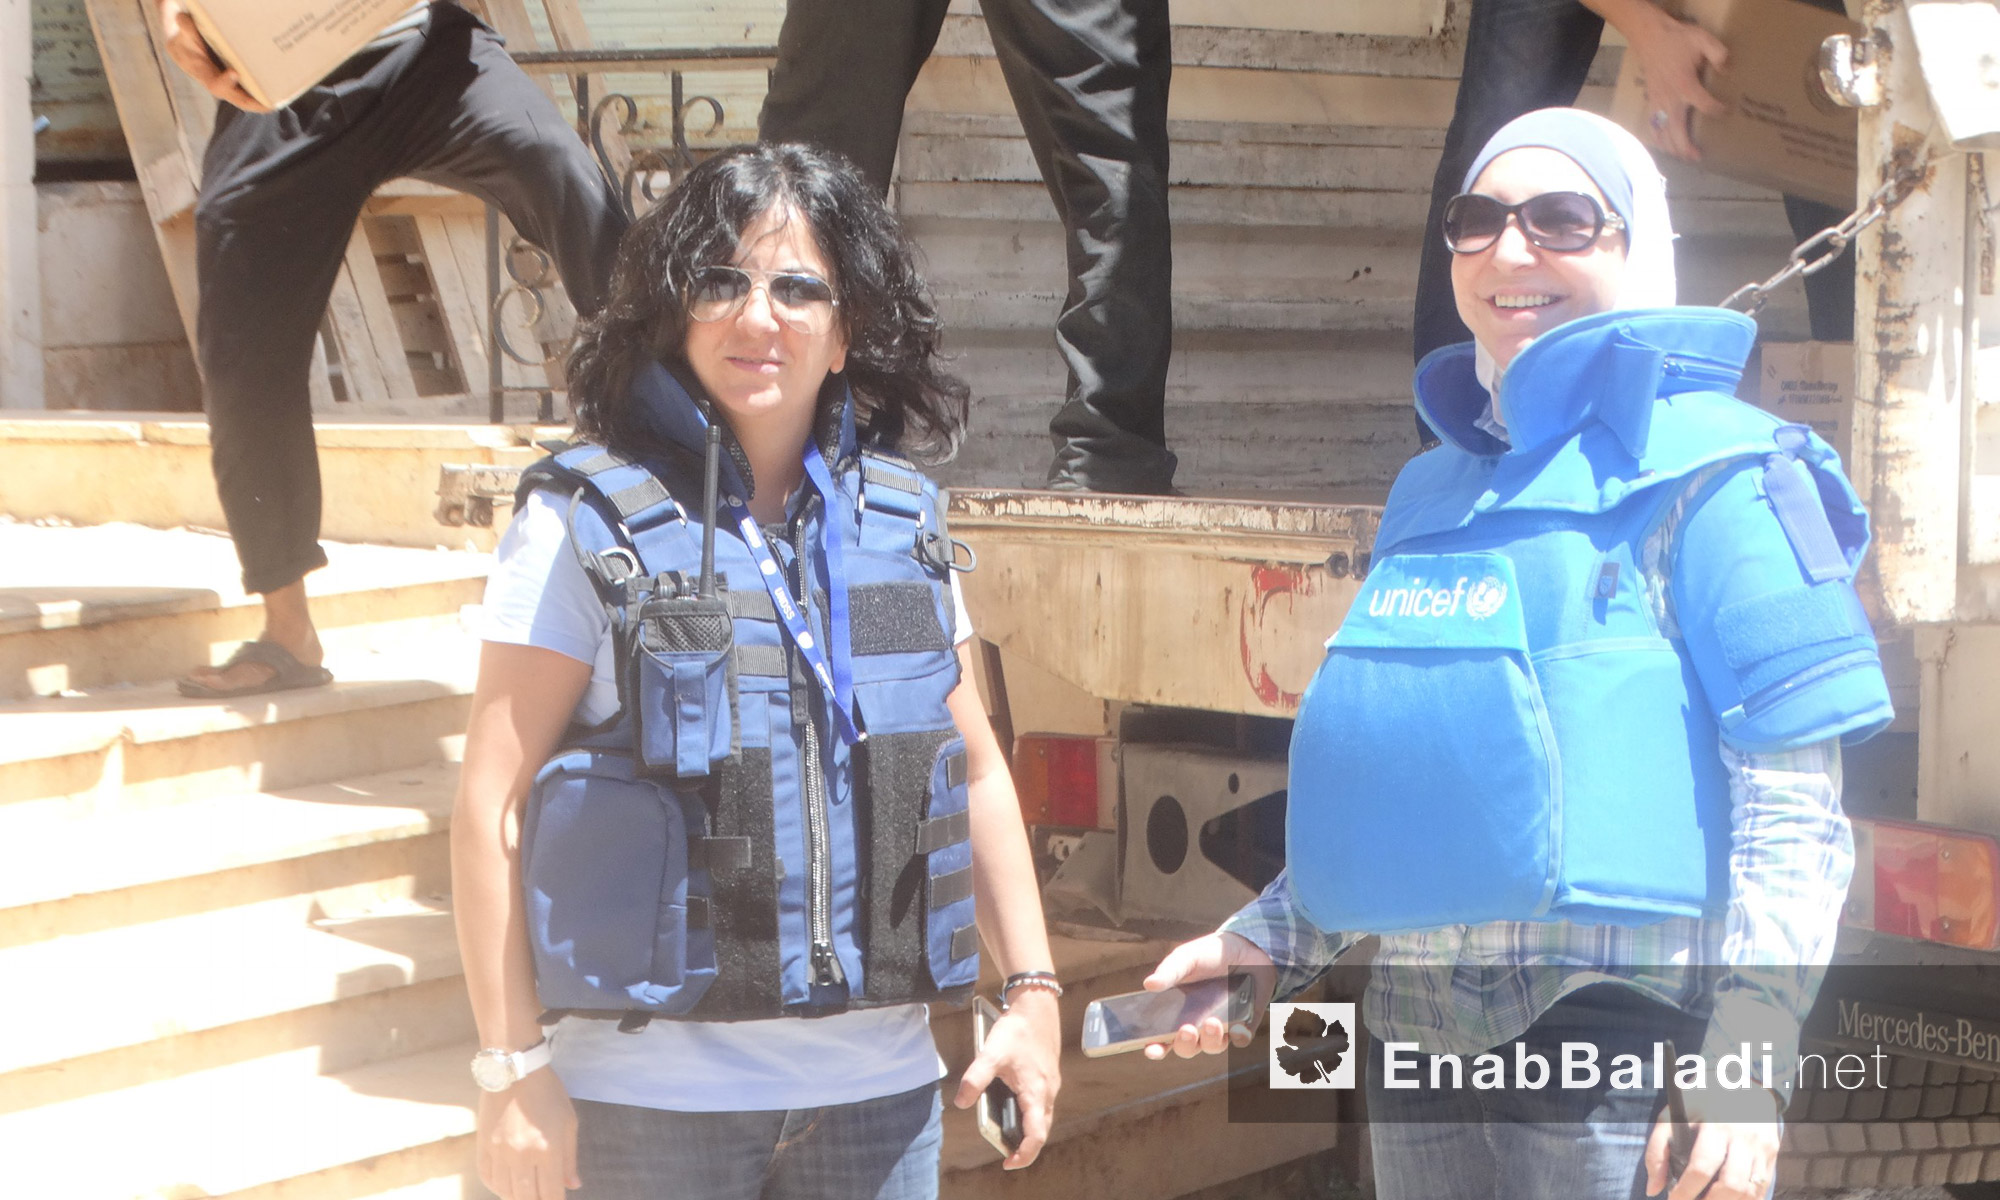 مساعدات غذائية تدخل حي الوعر في حمص - الاثنين 18 تموز (عنب بلدي)